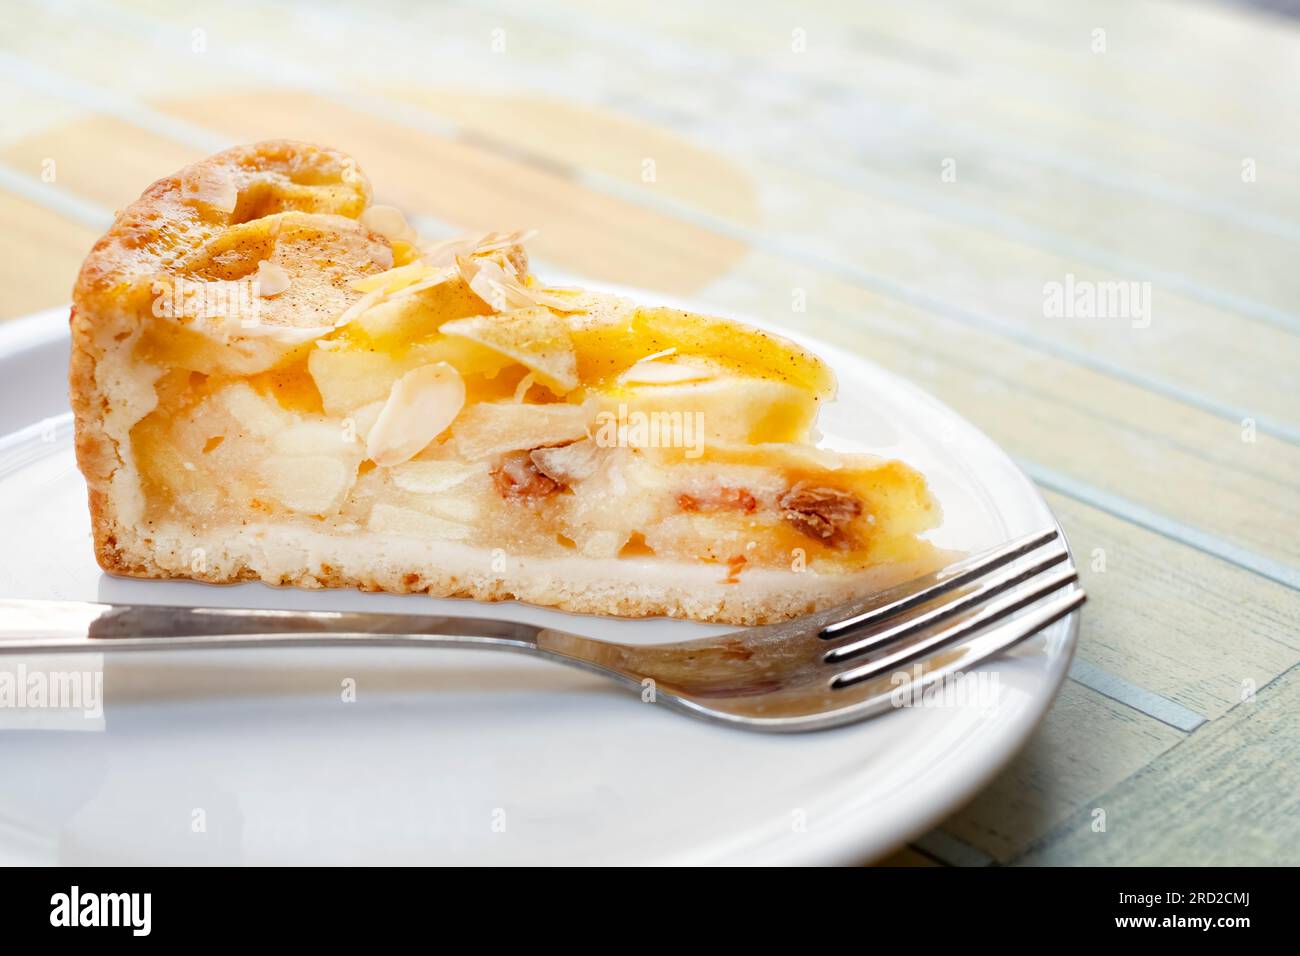 Ein Stück frisch zubereiteter Apfelkuchen. Der tiefe Kuchen hat eine Teigkruste und ist gefüllt mit großen Apfelscheiben Stockfoto